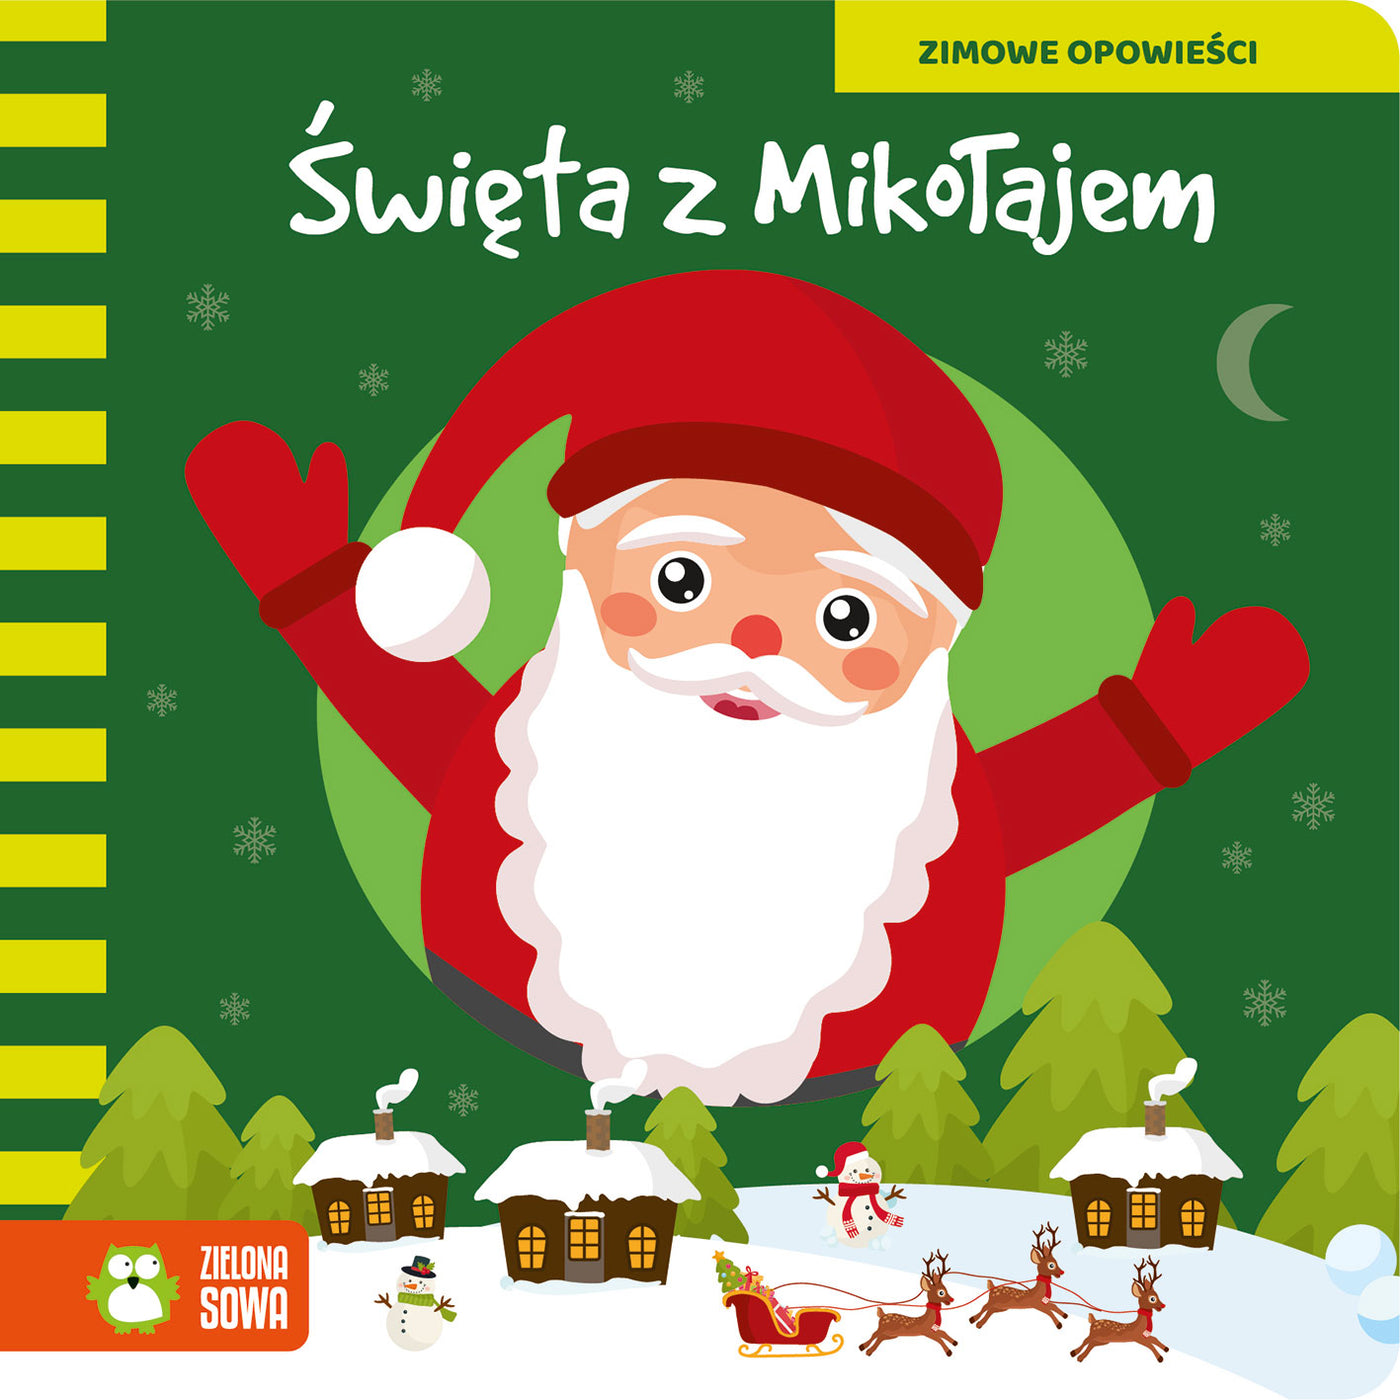 Zielona Sowa Książka dla dzieci Zimowe opowieści Święta z Mikołajem